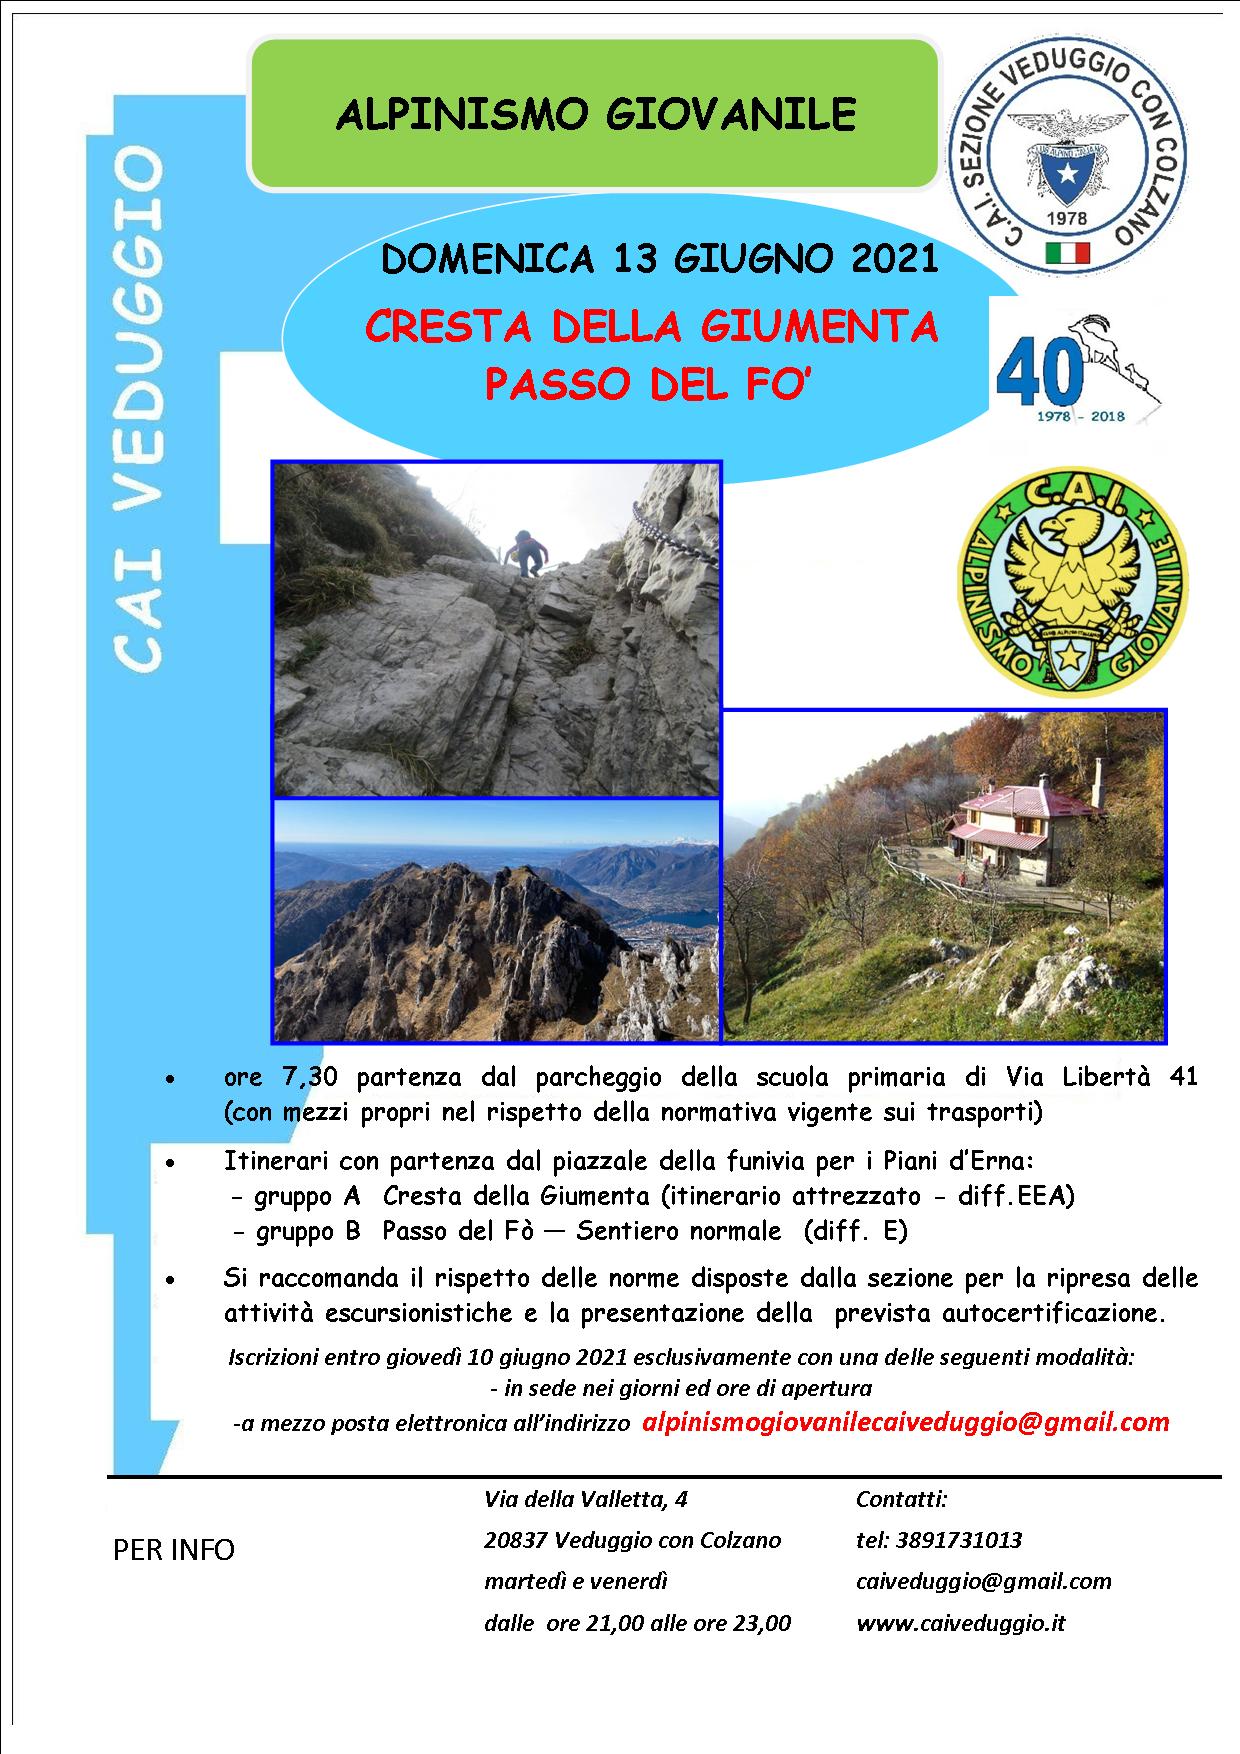 Domenica 13 giugno 2021 – Cresta della Giumenta – Passo del Fò – Alpinismo Giovanile